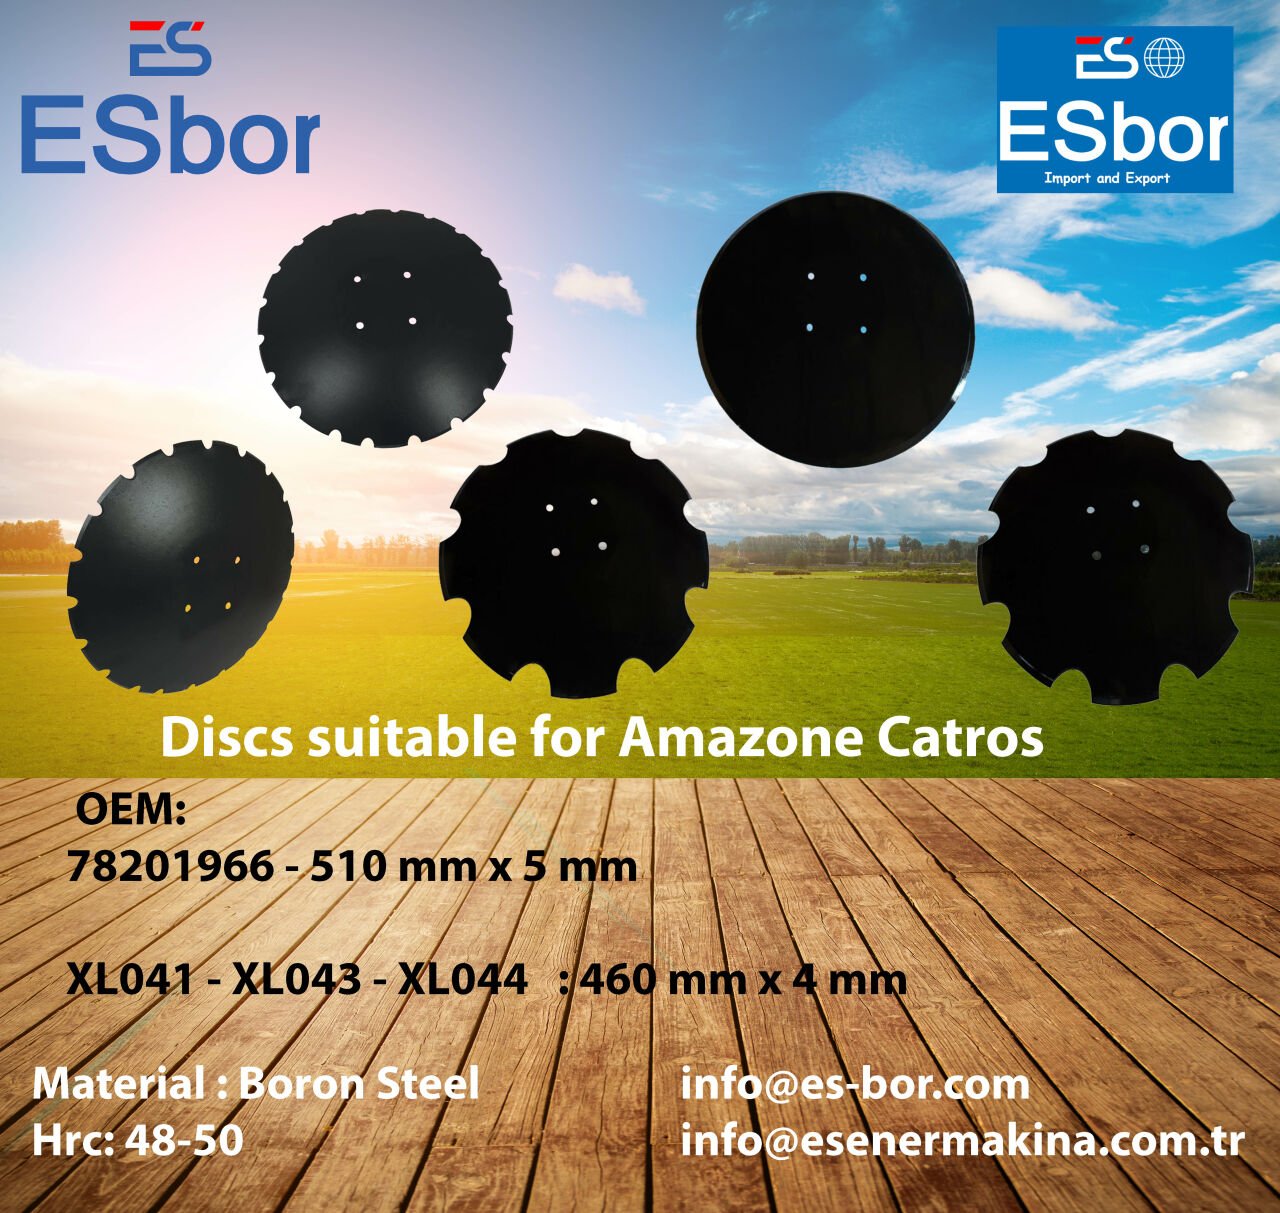 Esbor'un Amazone Uyumlu Diskleri: Tarımın Kalbinde Güçlü Bir Performans